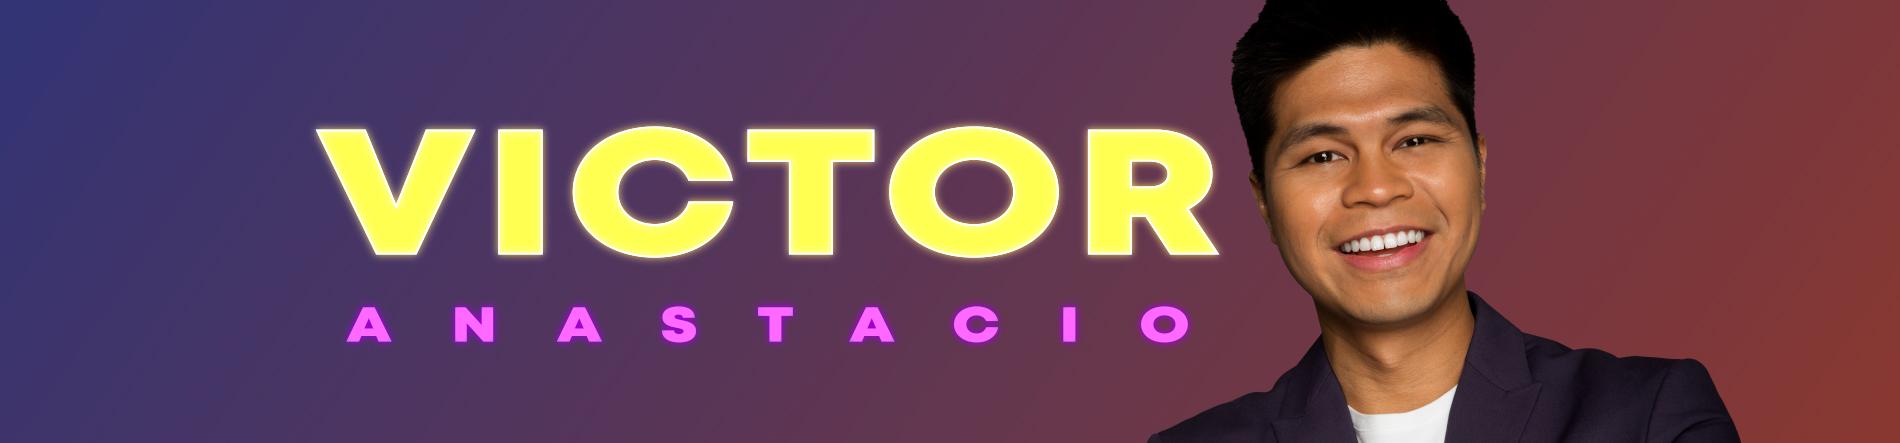 Victor Anastacio Desktop Banner